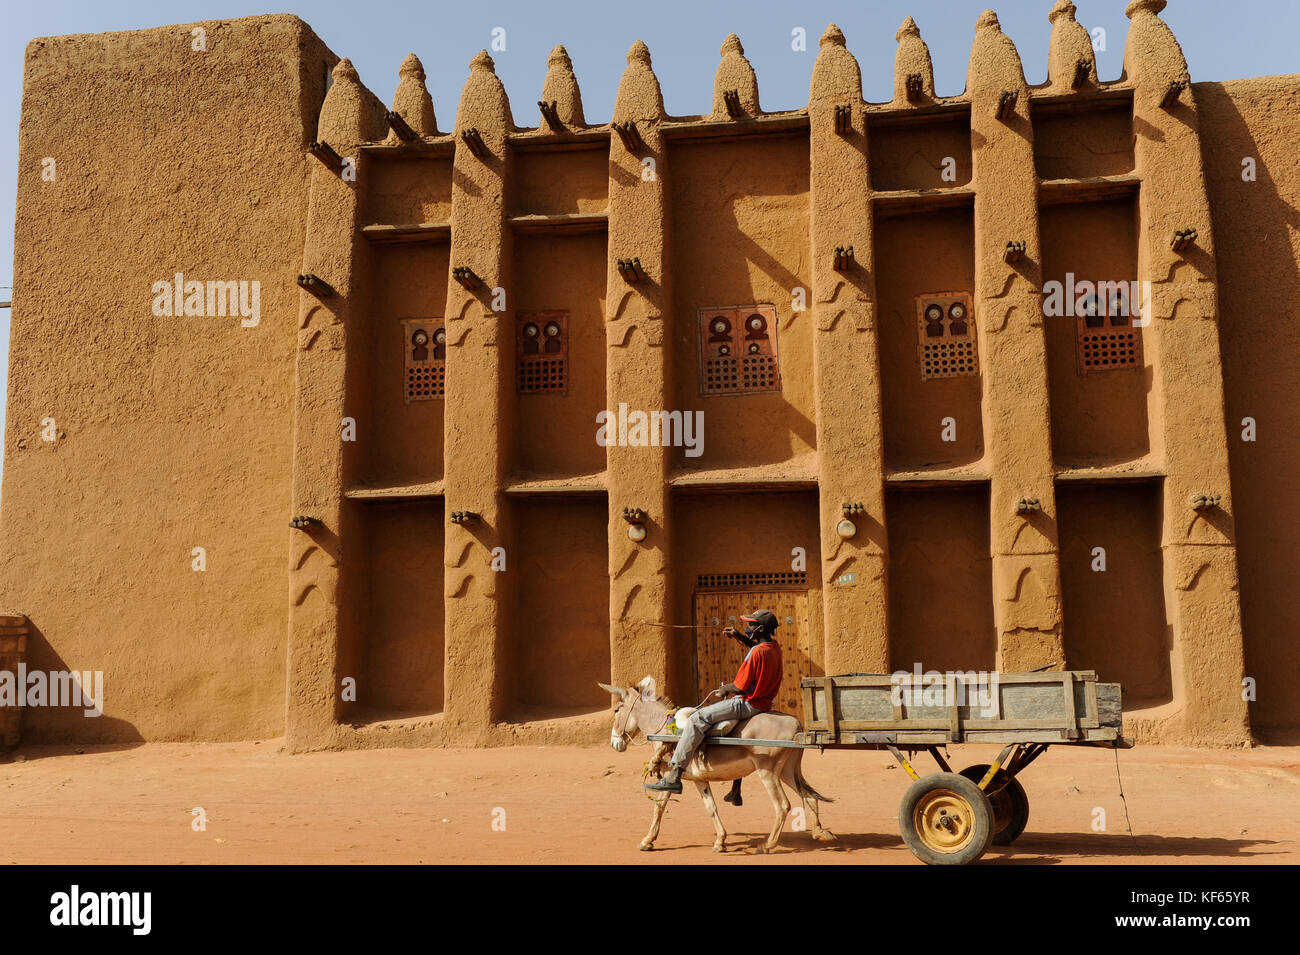 MALI, Bandiagara, Land der Dogon, alten Palast in Ton Architektur Palais Agubou Hoch de Bandiagara/Lehmbauten Stockfoto